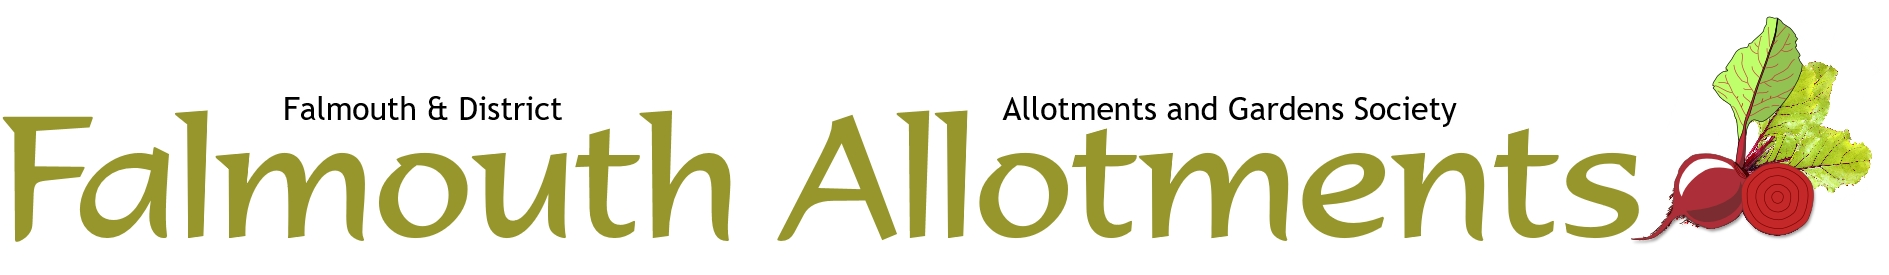 Falmouth Allotments Society Banner